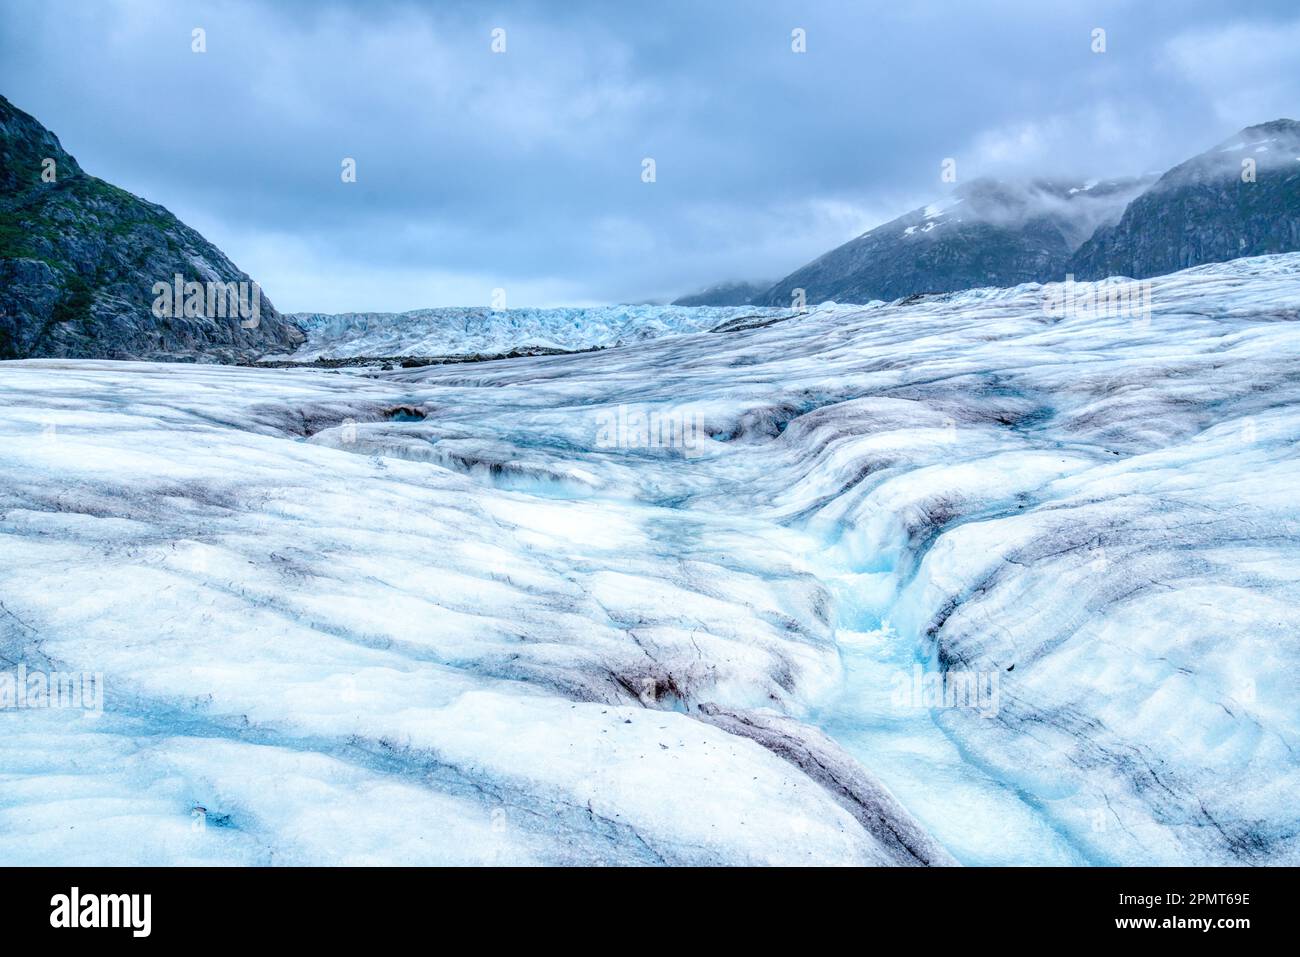 Il ghiaccio fondente del ghiacciaio Mendenhall in Alaska forma un flusso tortuoso di acque cristalline e blu Foto Stock